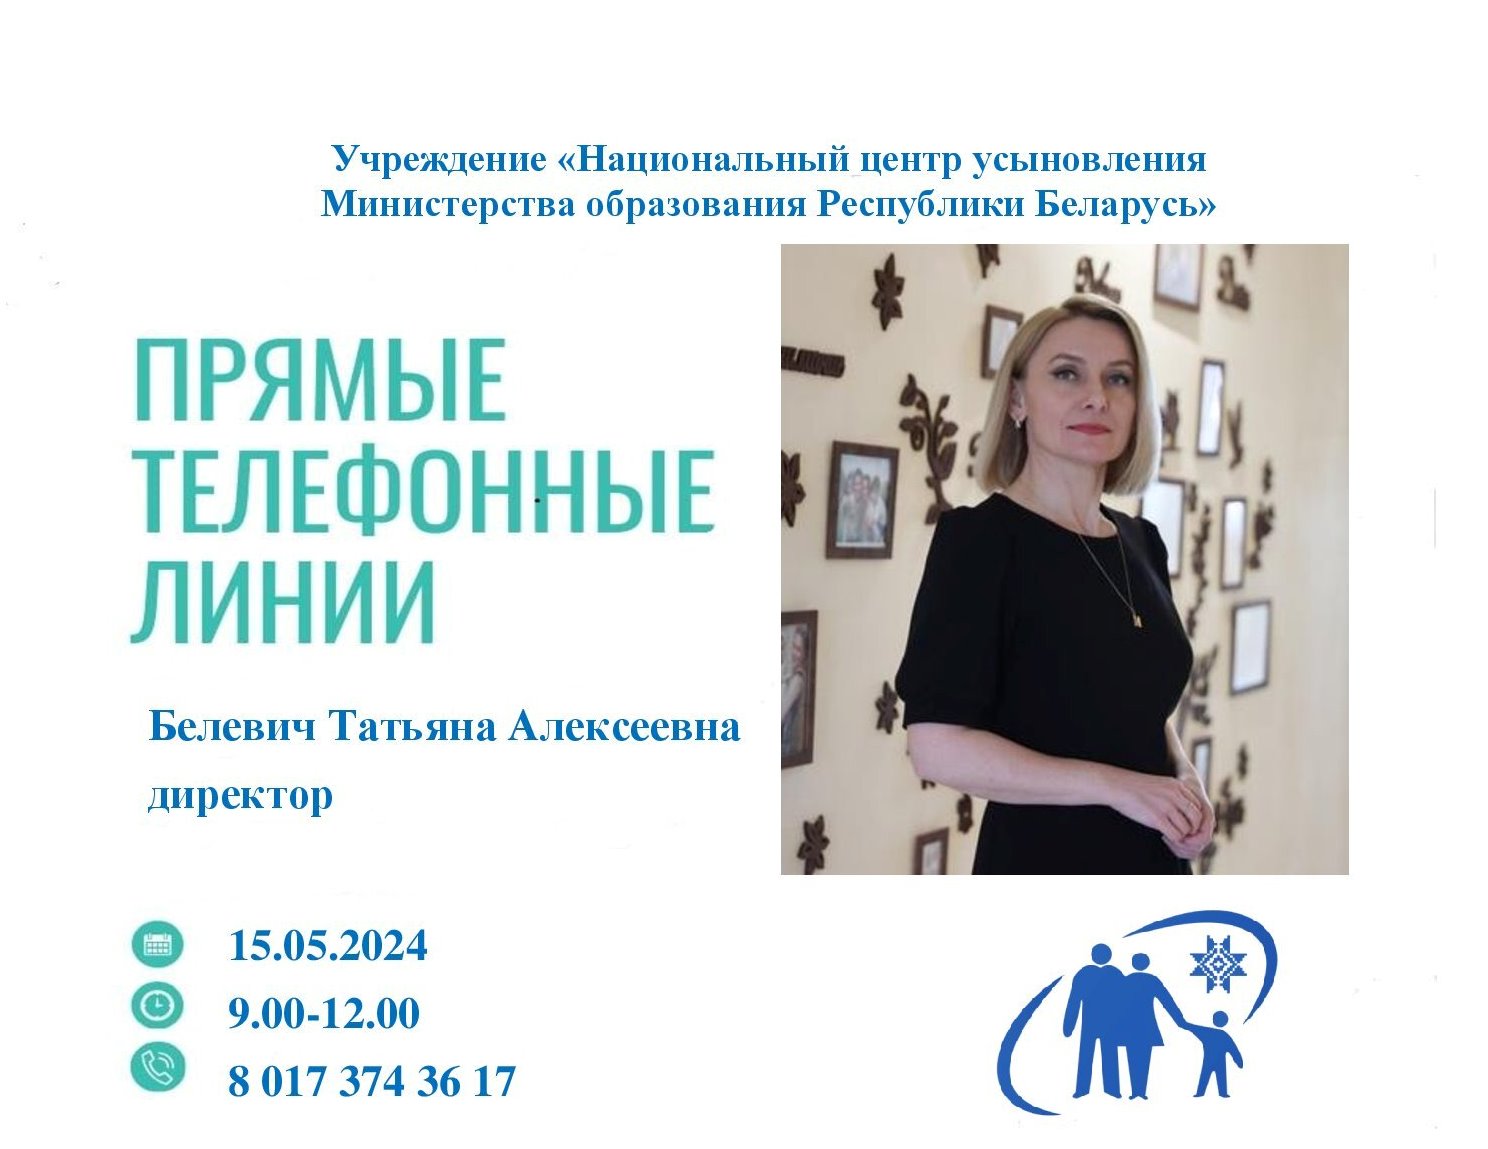 15 мая «прямую телефонную линию» проведет директор Национального центра усыновления Татьяна  Алексеевна Белевич